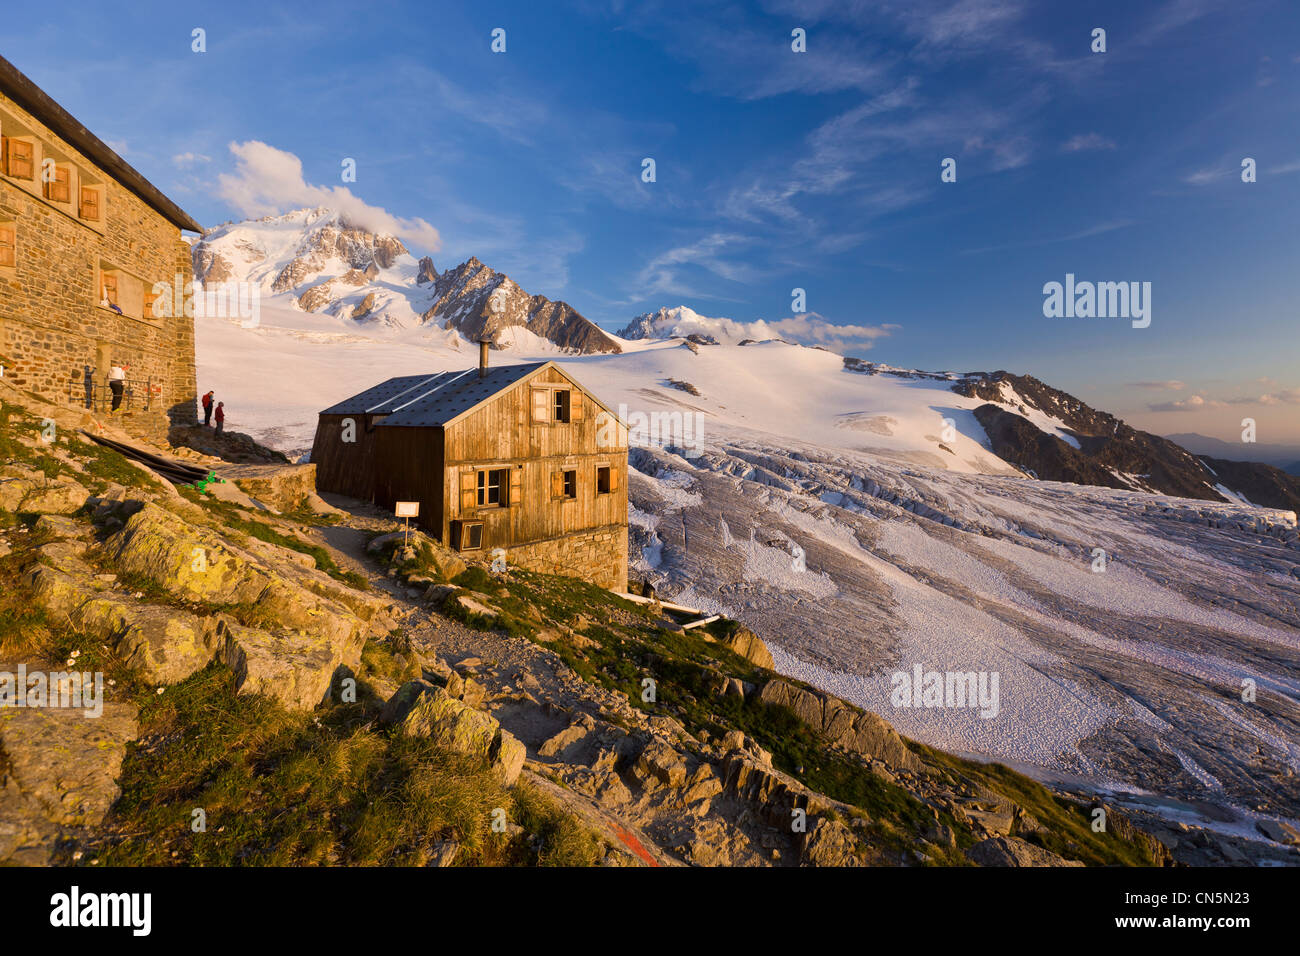 France, Haute Savoie, Massif du Mont Blanc, Chamonix Mont Blanc, Albert 1st refuge (2702m) with a view of the Glacier du Tour, Stock Photo